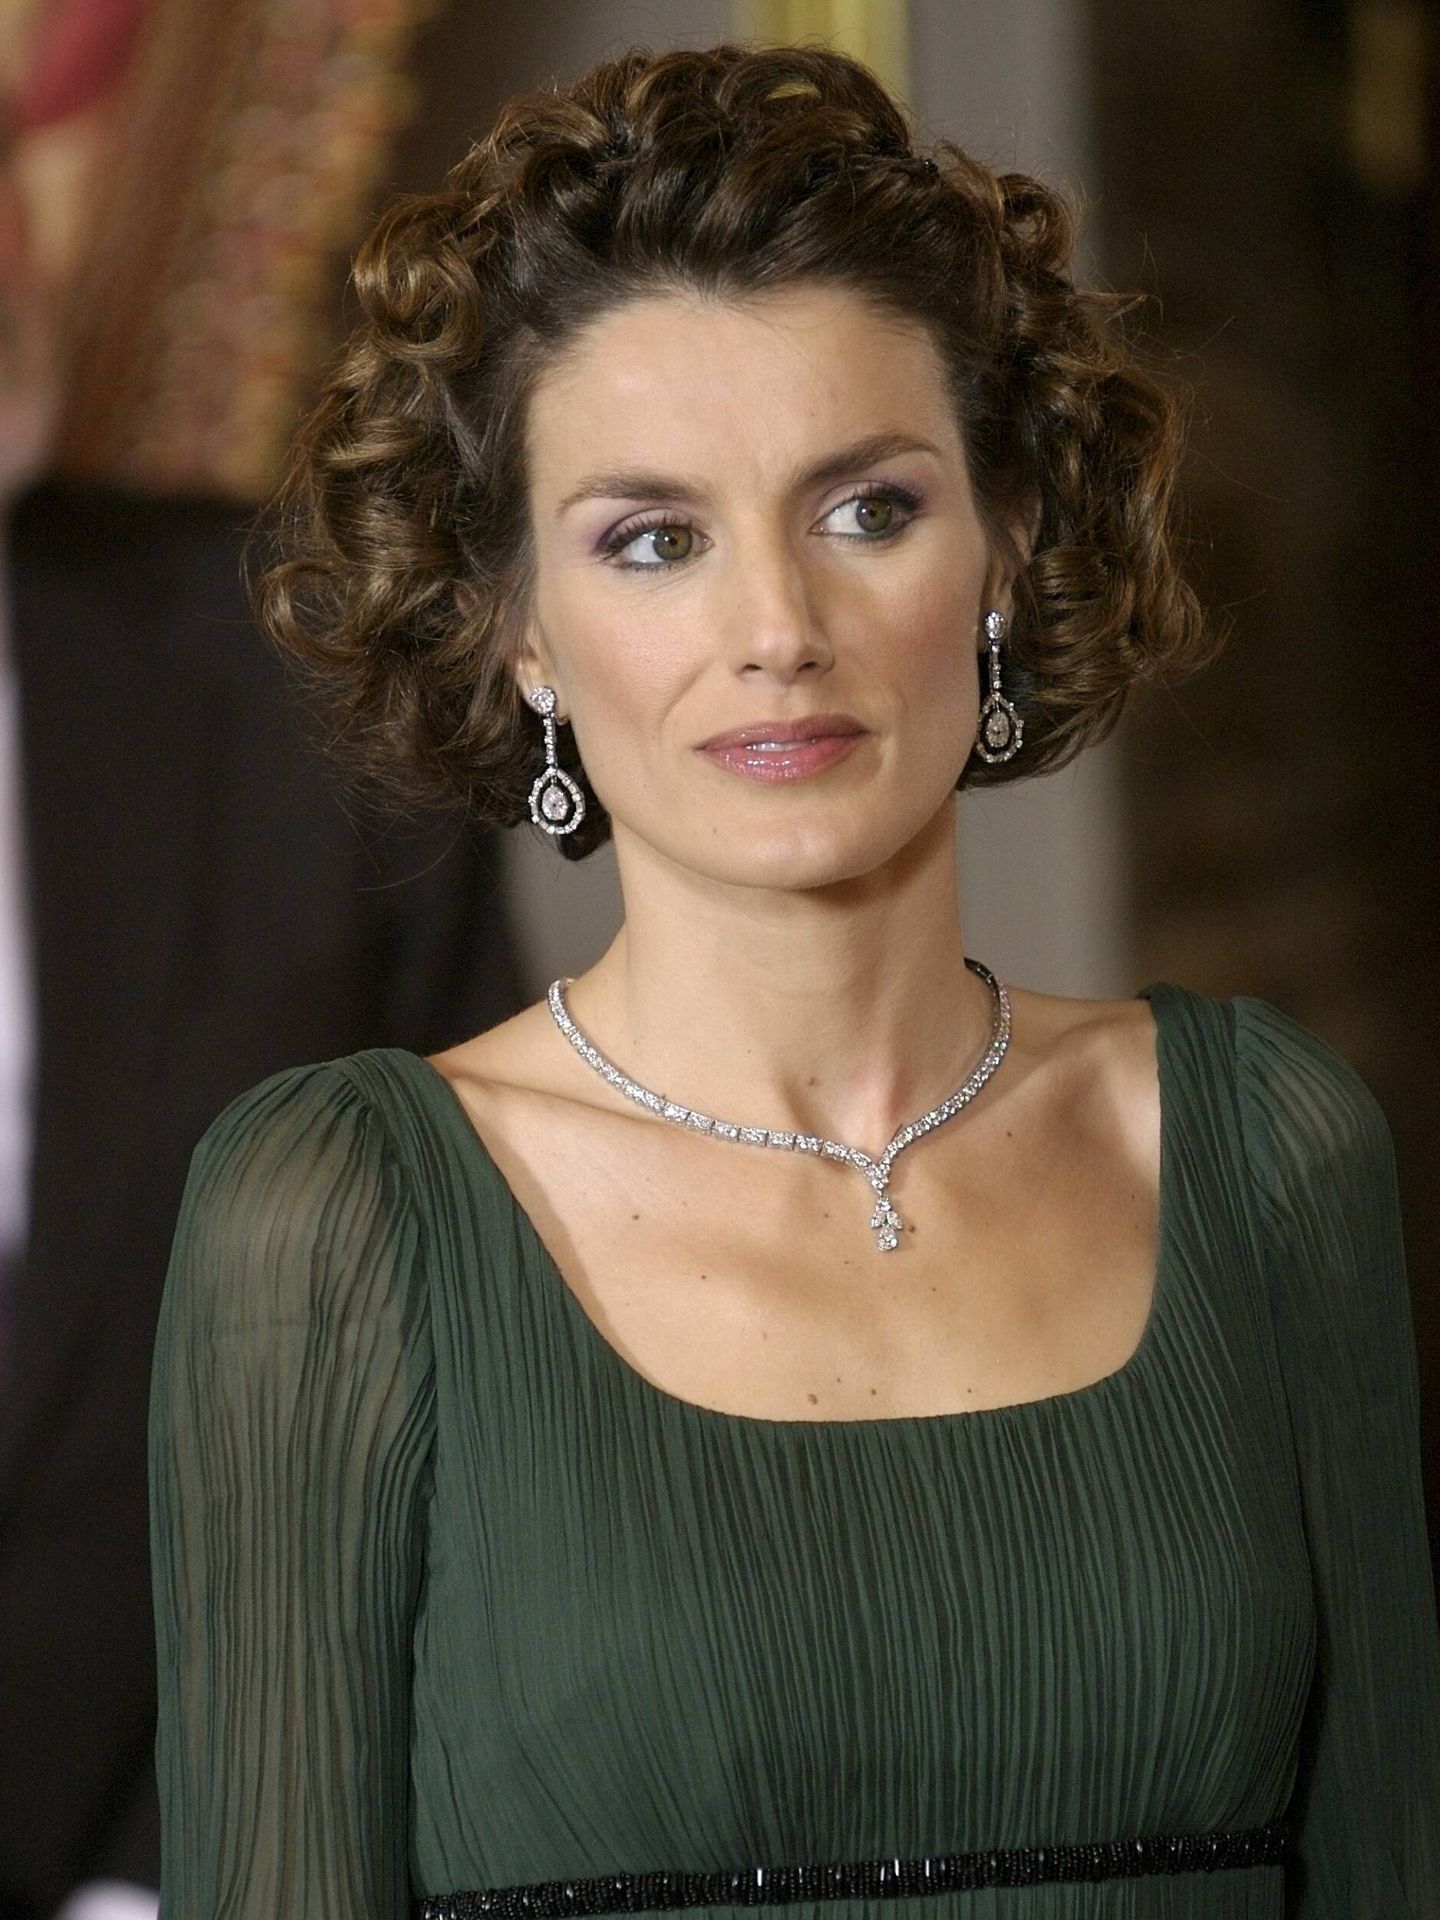  La reina Letizia, con los pendientes y el collar que la reina Sofía llevó en su boda. (Getty)